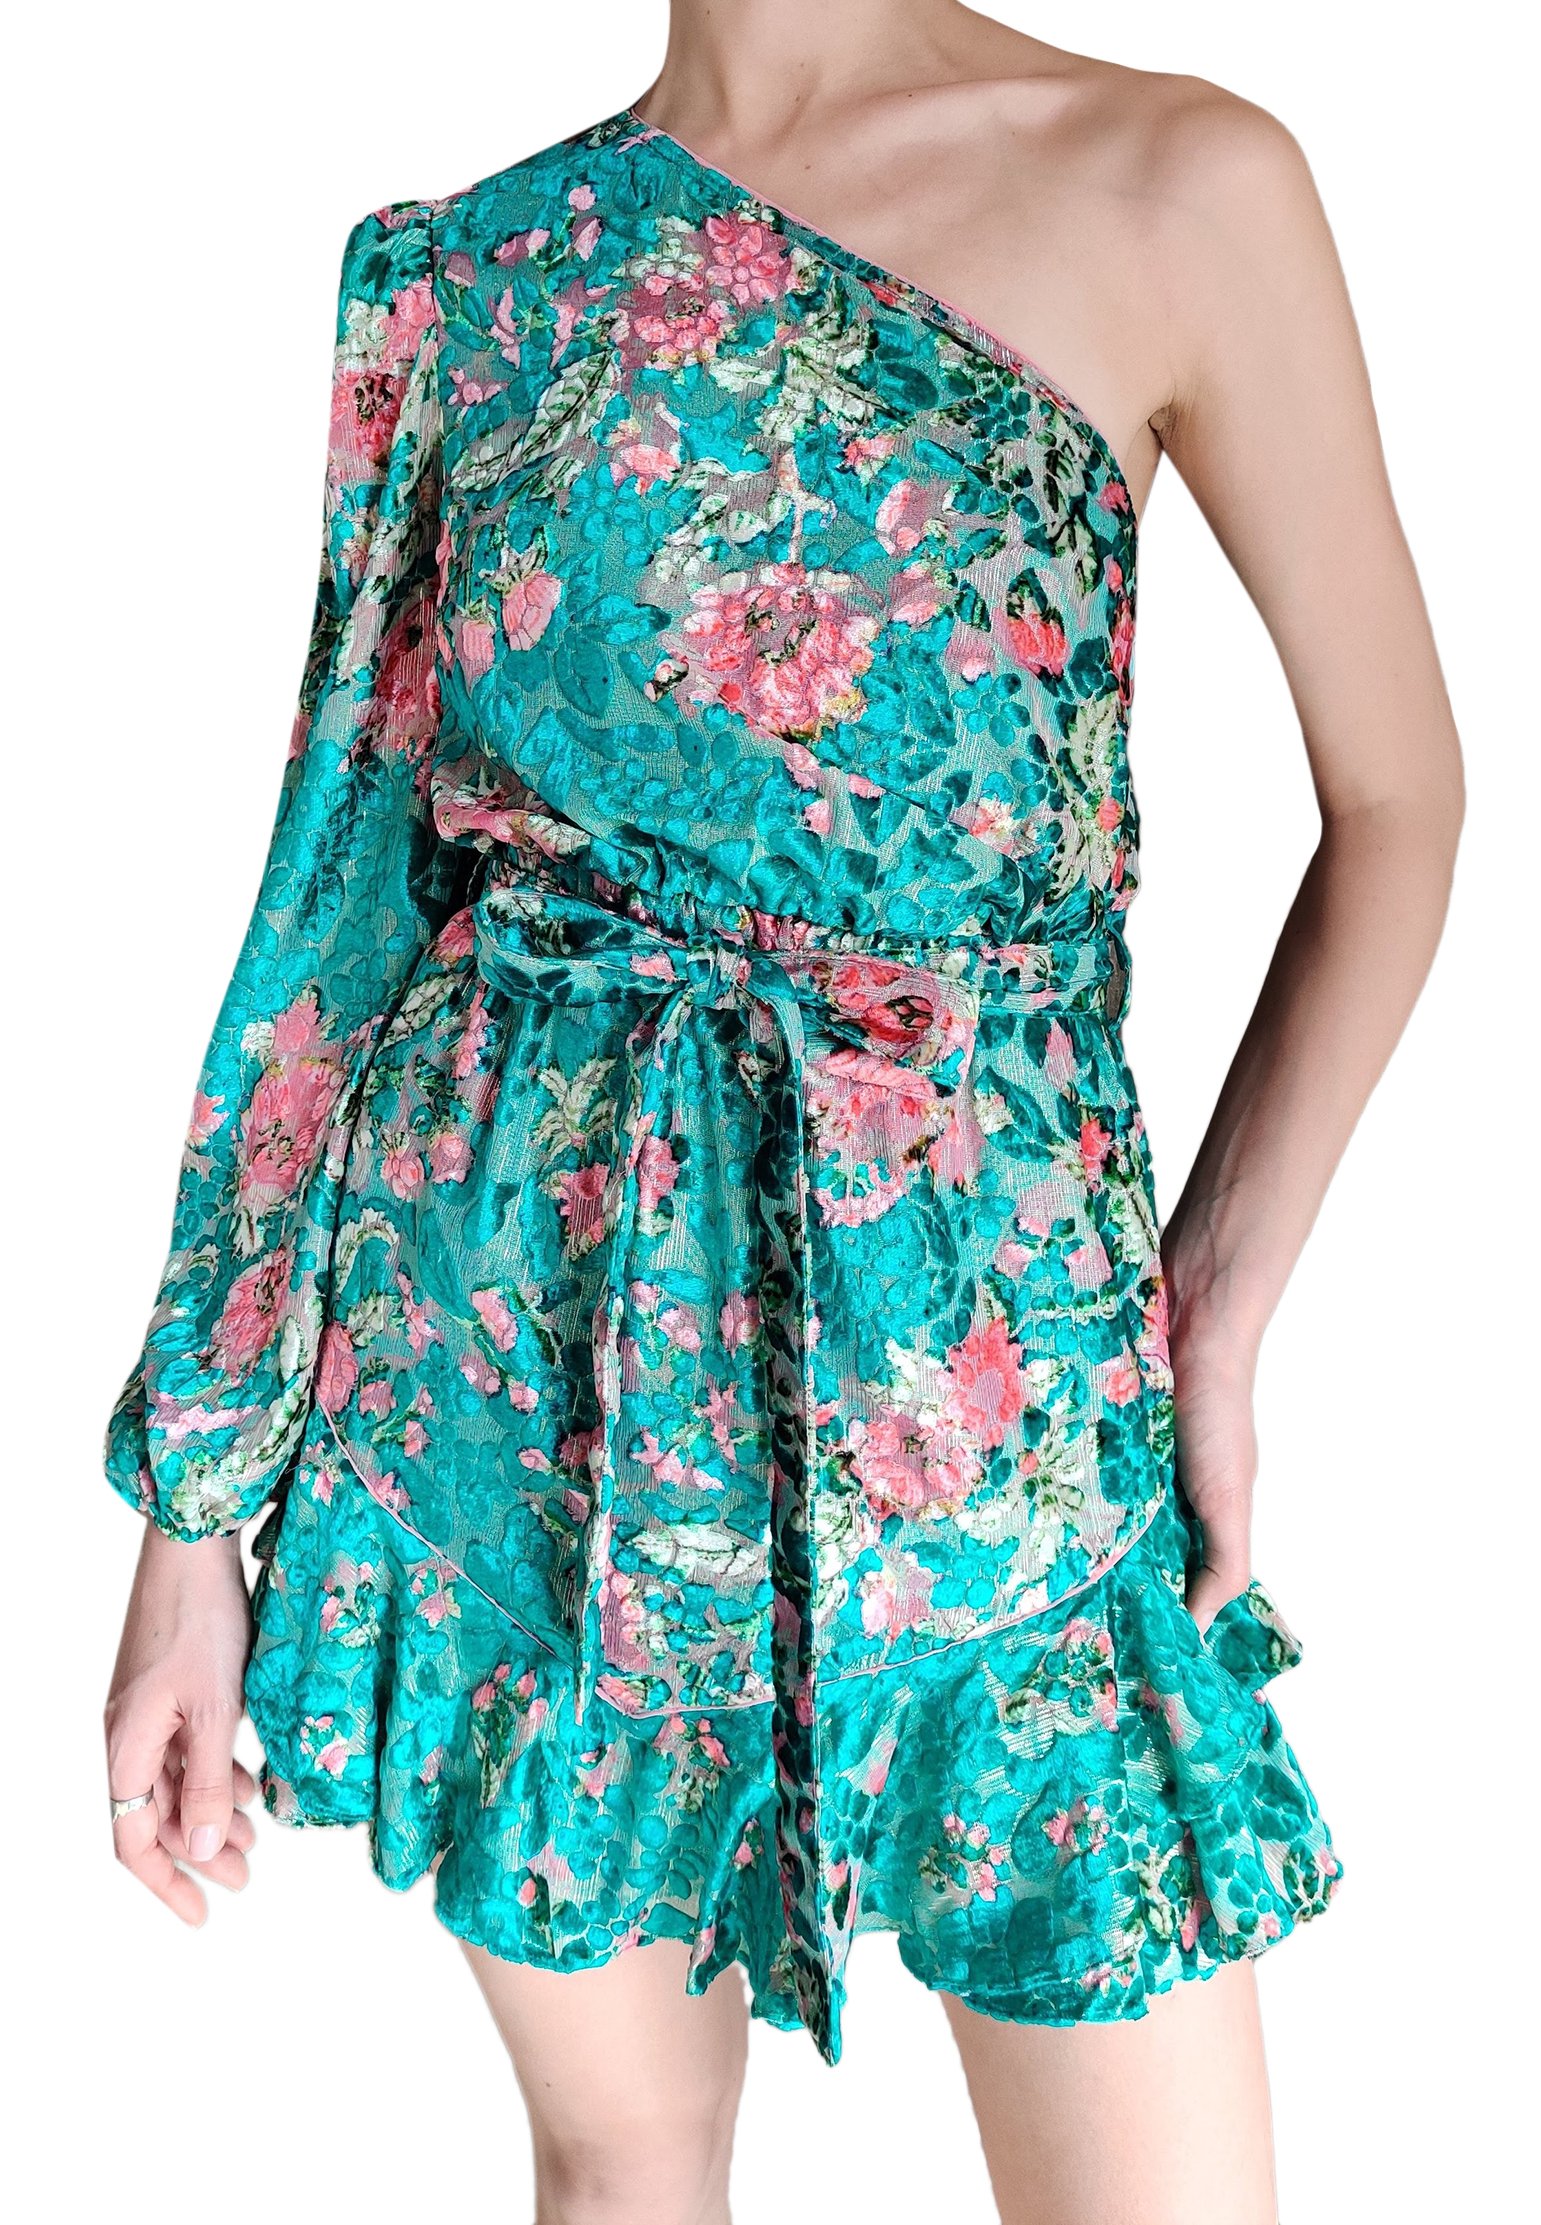 Dress HEMANT&NANDITA Color: green (Code: 750) in online store Allure